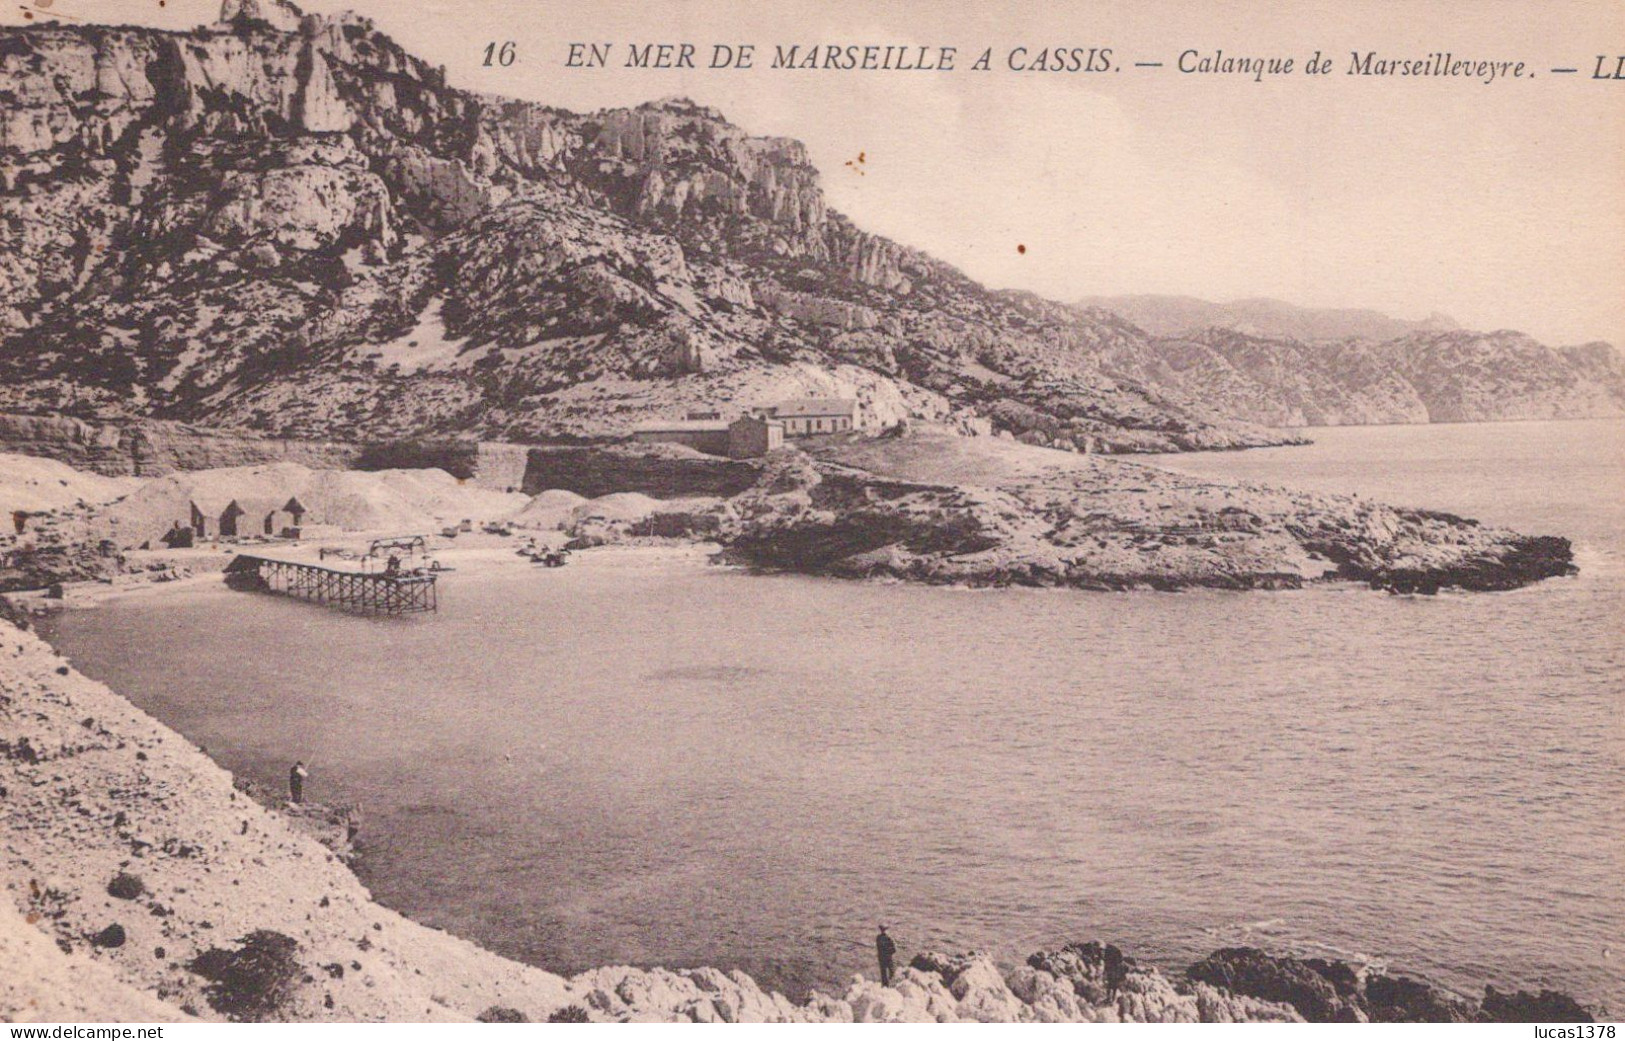 13 / EN MER DE MARSEILLE A CASSIS /  CALANQUE DE MARSEILLEVEYRE - Quartiers Sud, Mazargues, Bonneveine, Pointe Rouge, Calanques